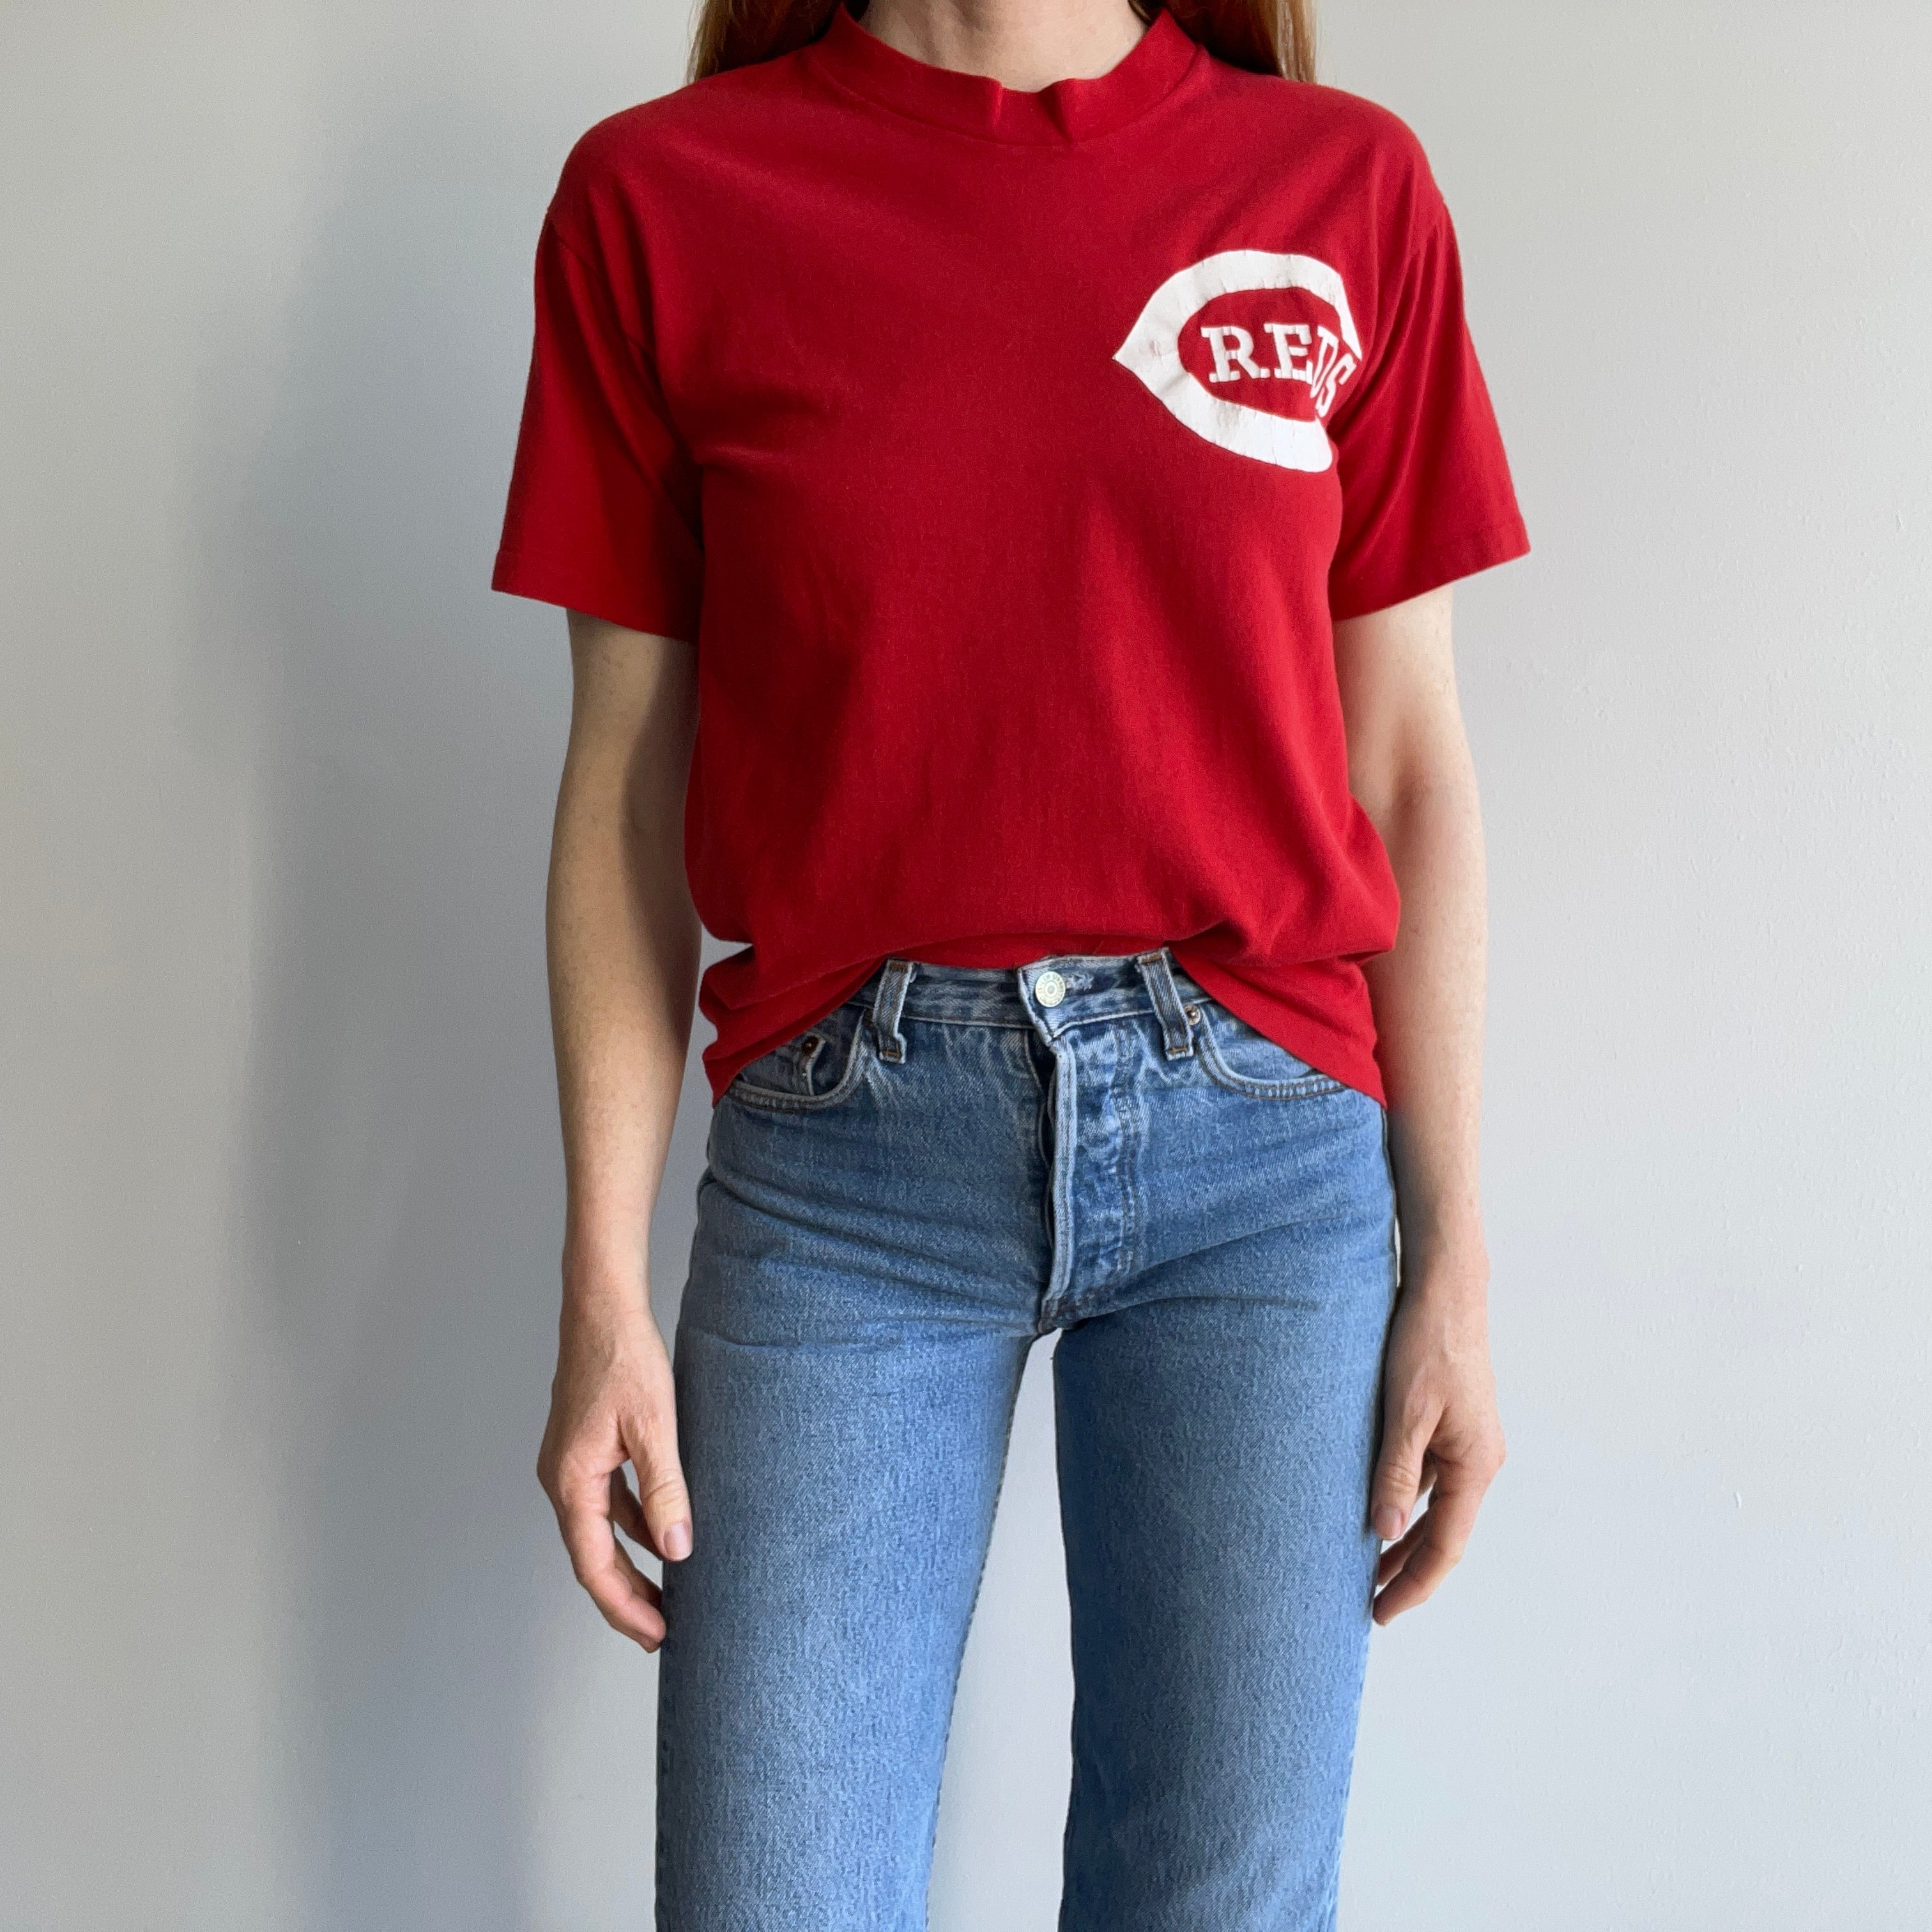 1980s Cincinatti Reds T-Shirt